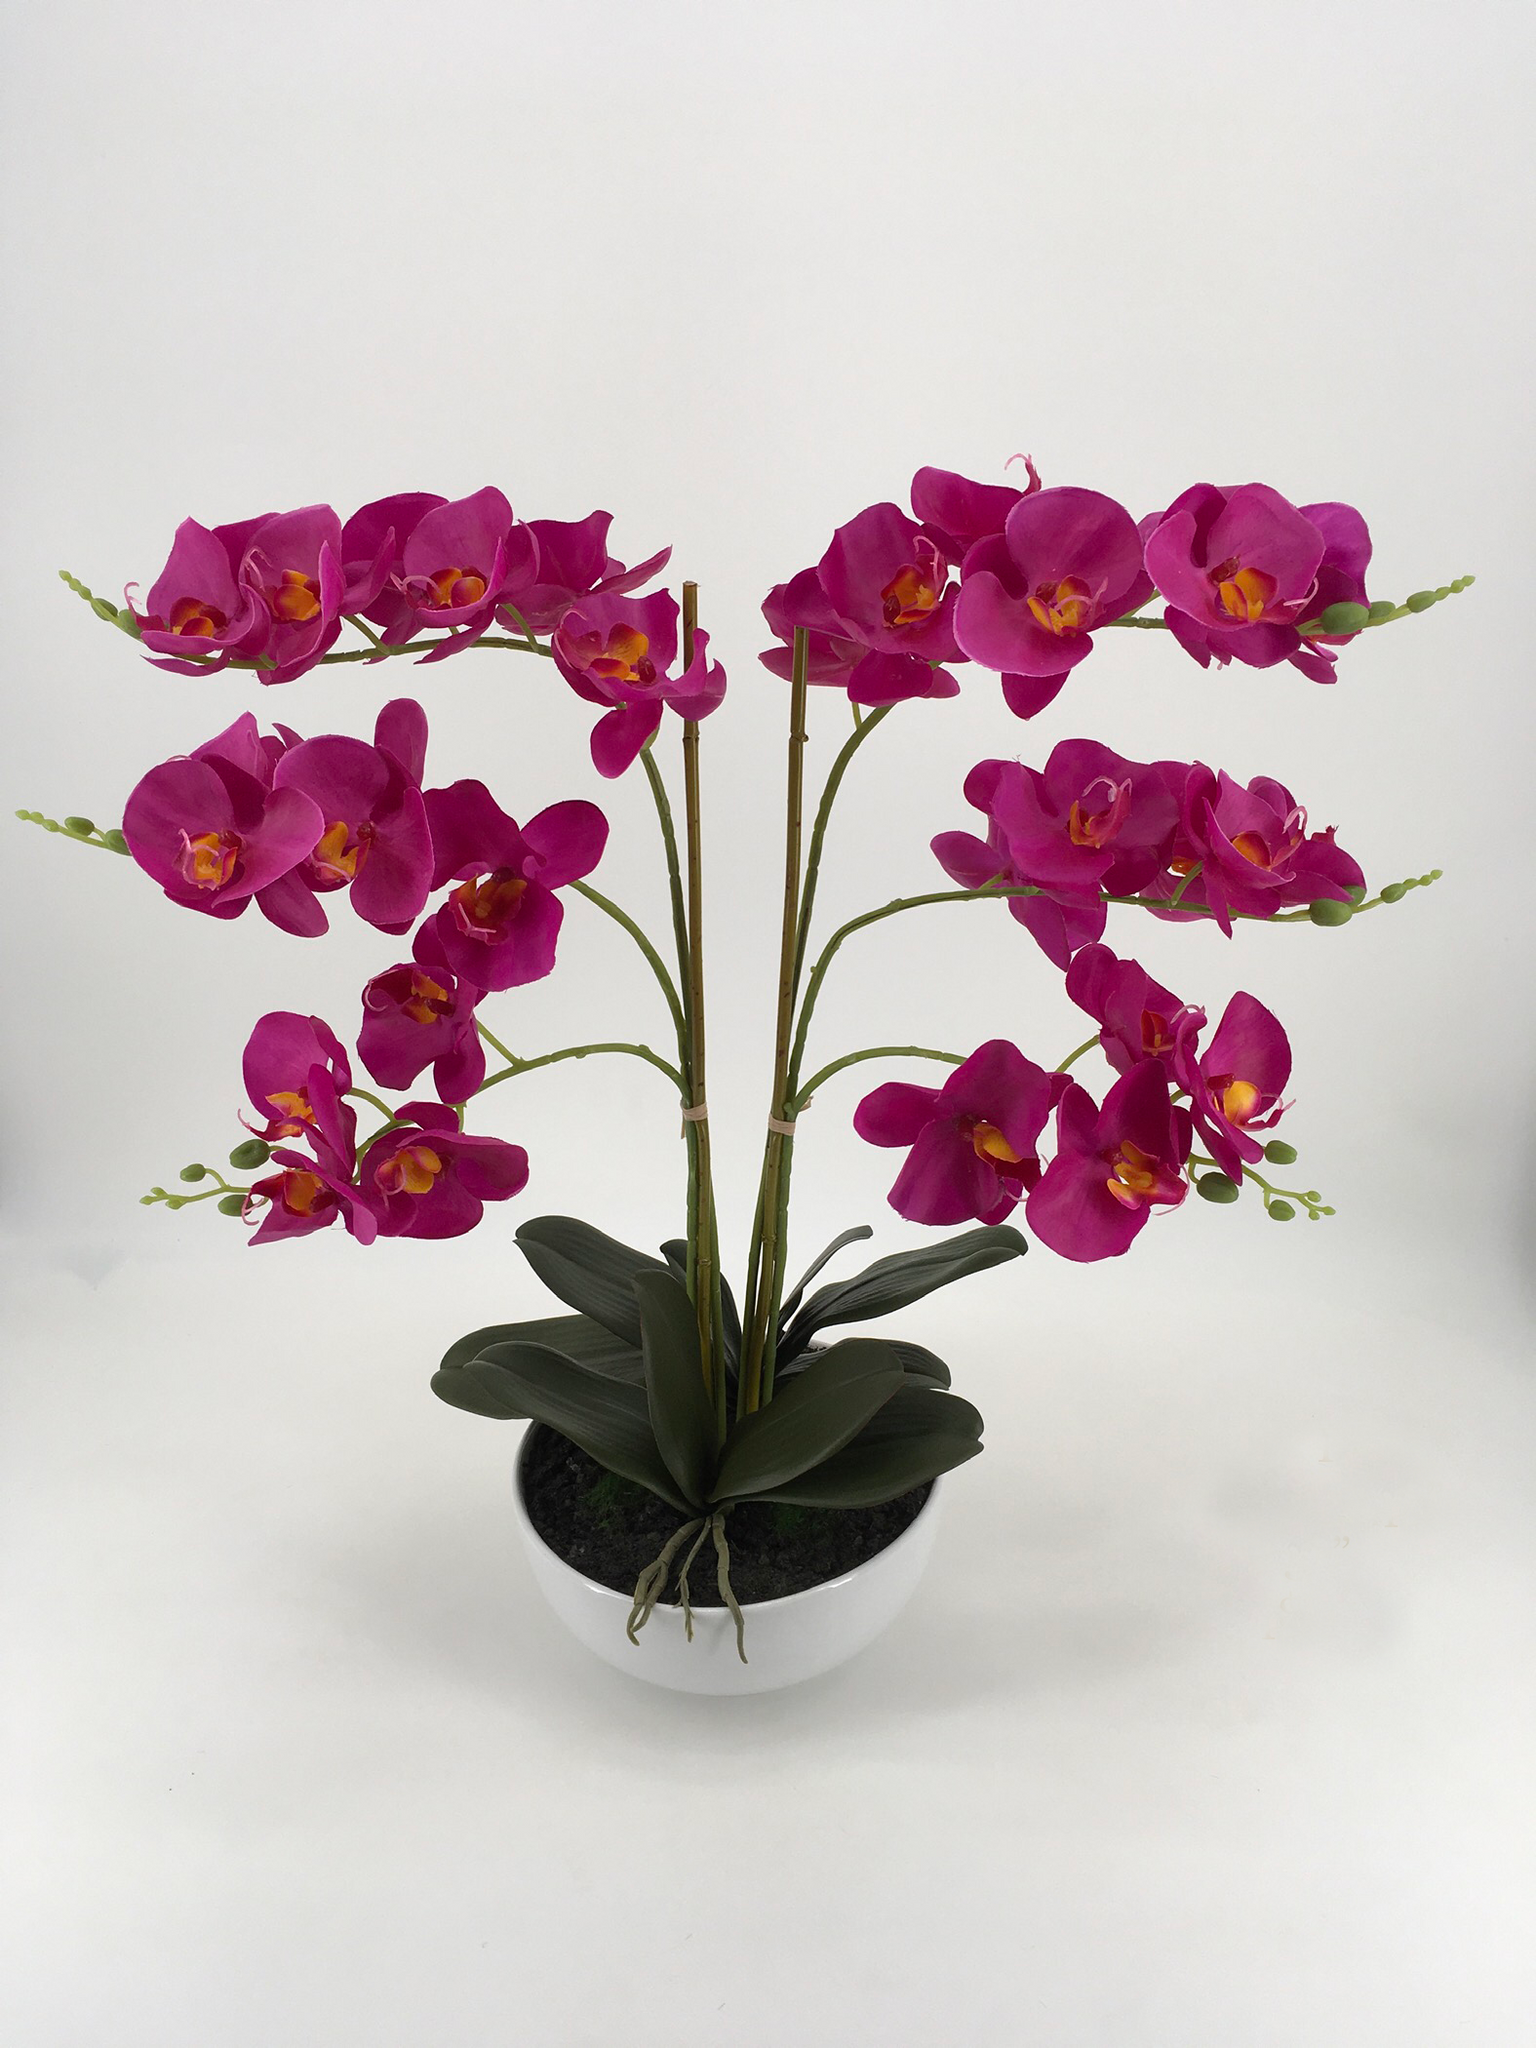 Grand Purple Orchid in White Pot